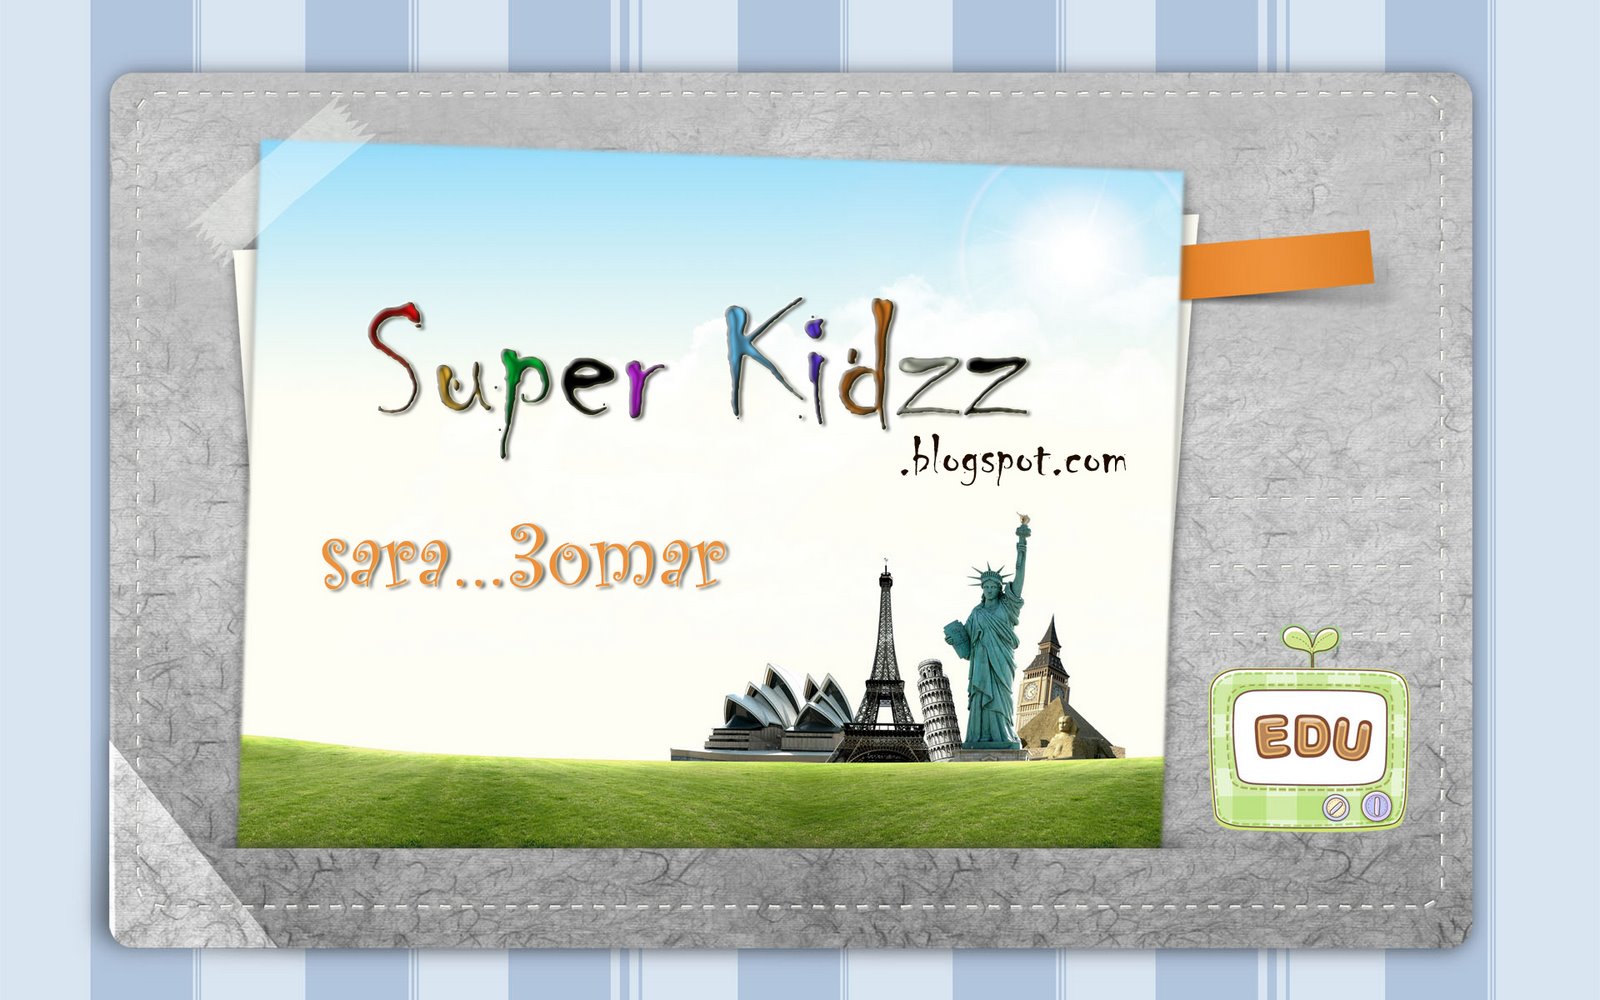 Super Kidzz